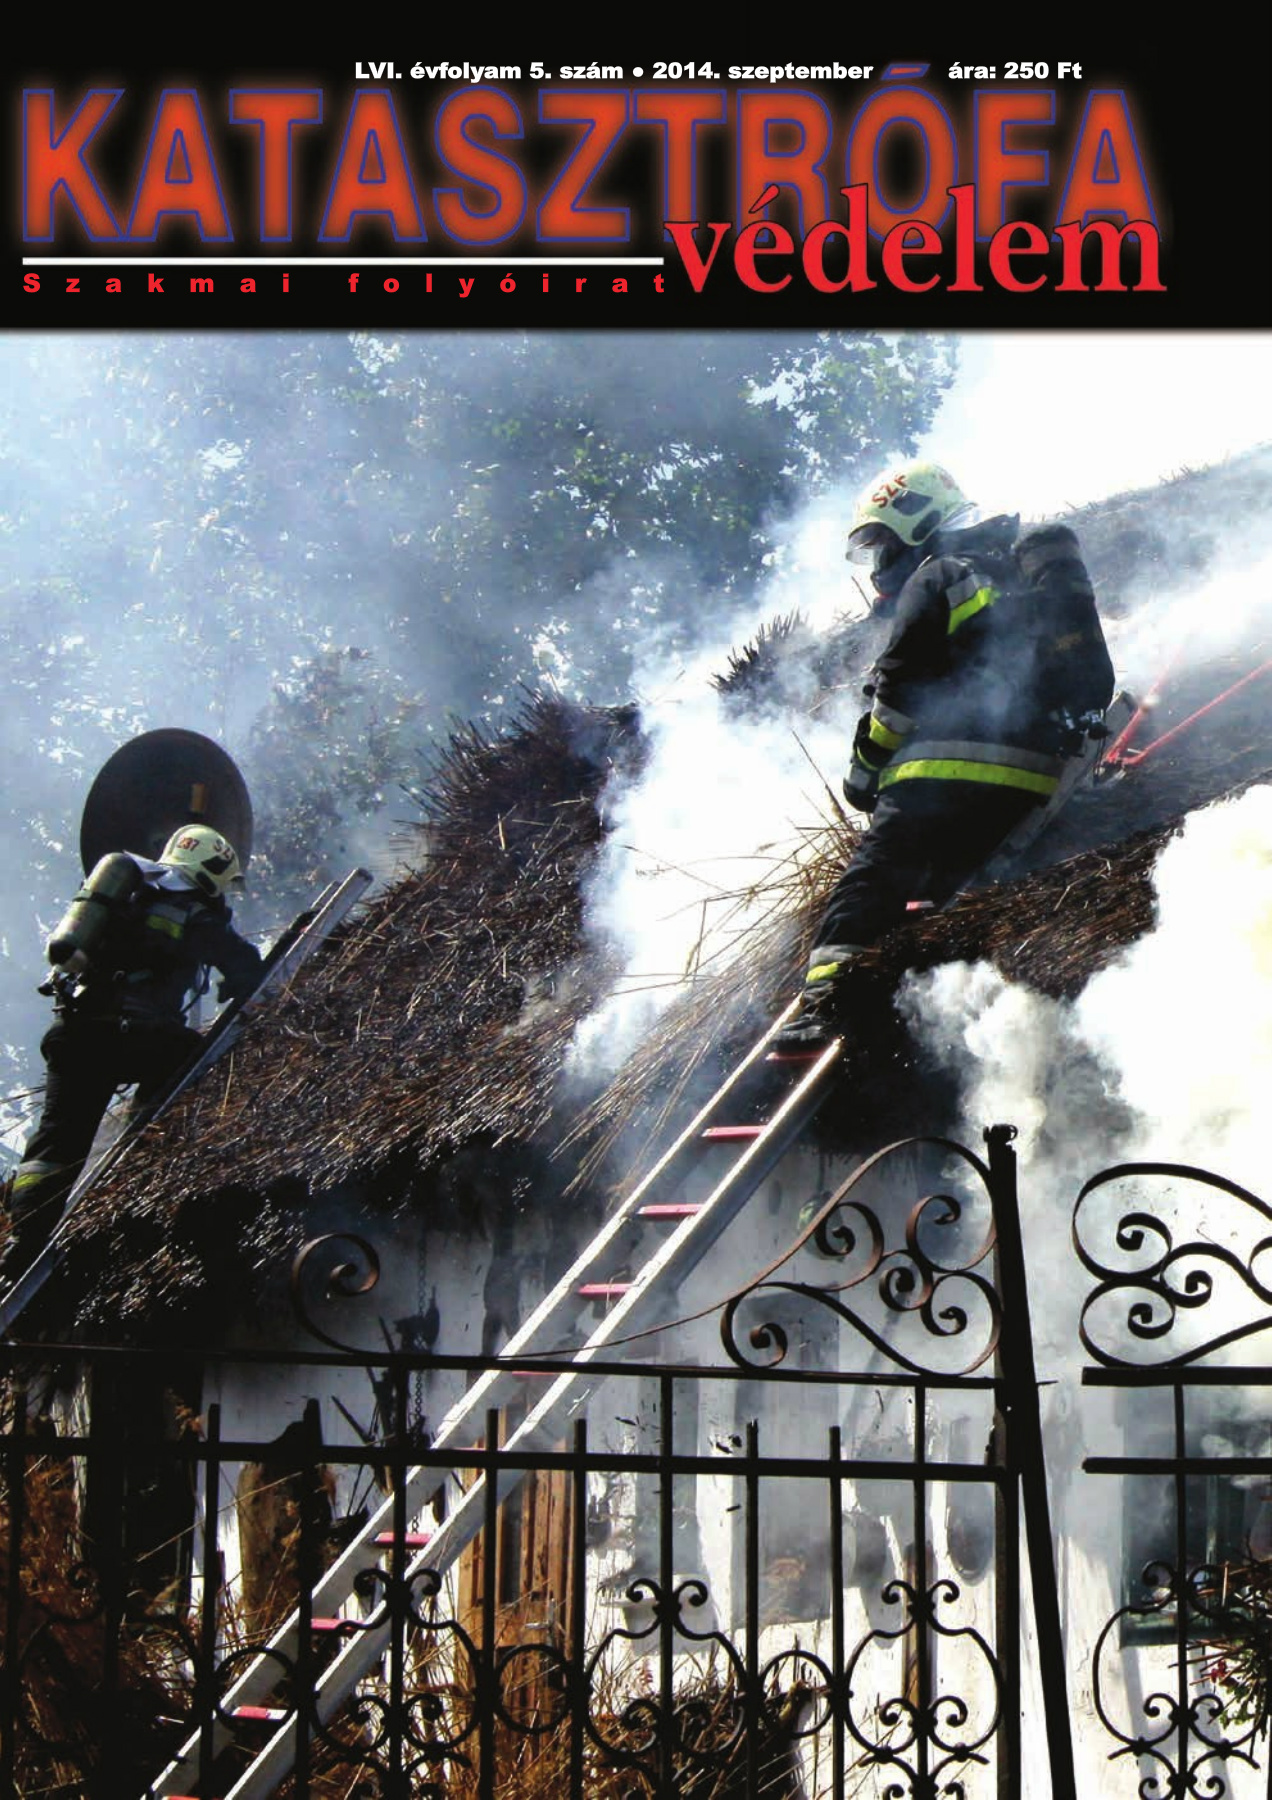 A Katasztrófavédelem magazin LVI. évfolyam 9. szám megtekintése